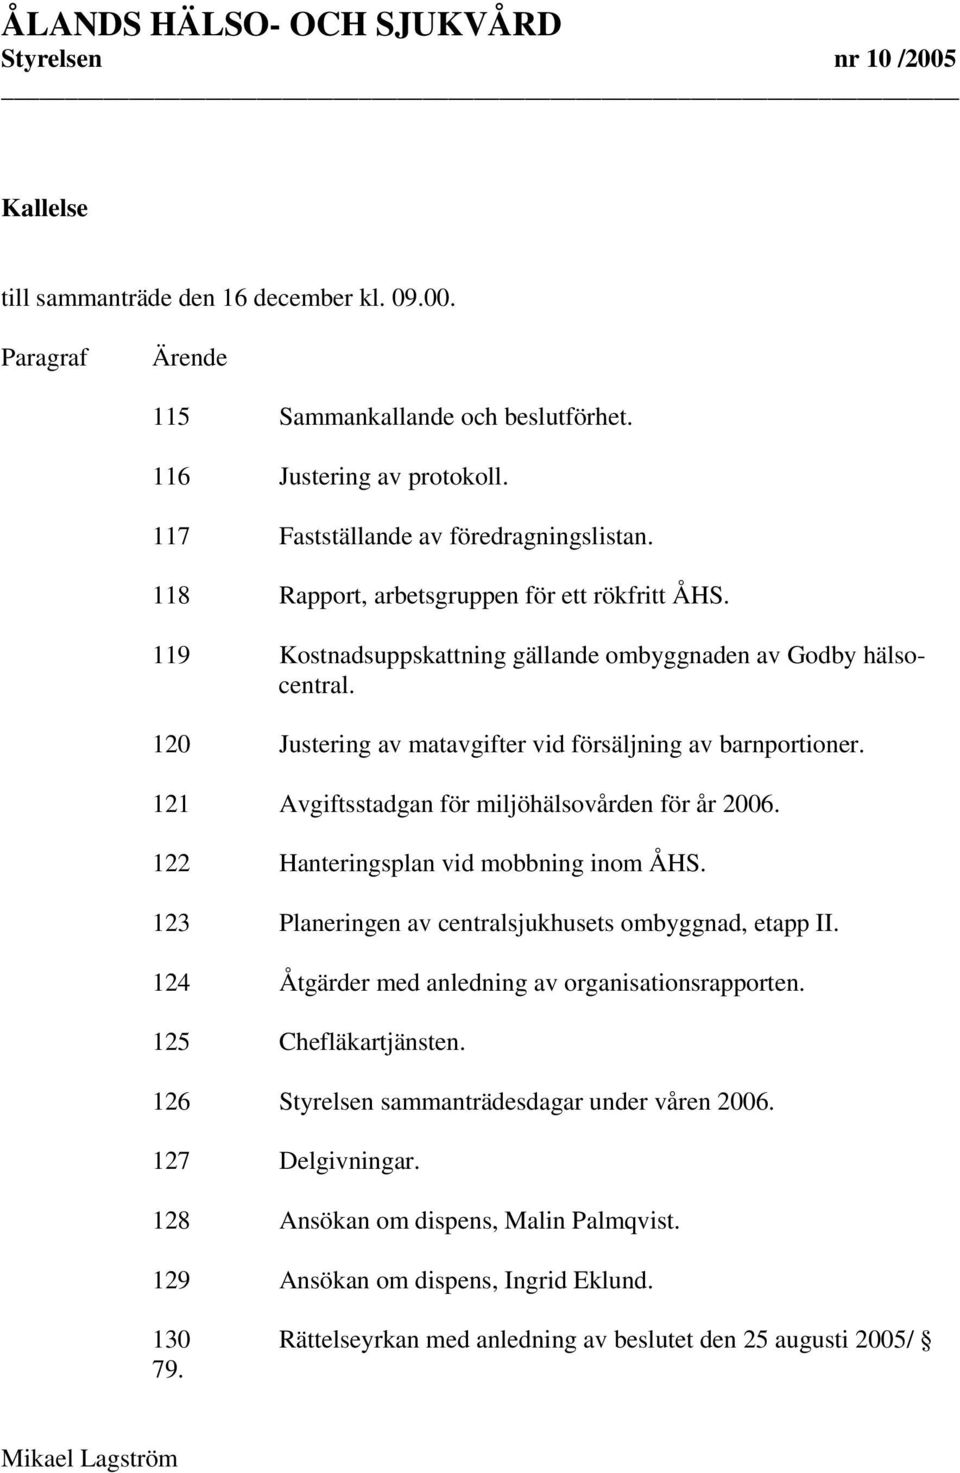 121 Avgiftsstadgan för miljöhälsovården för år 2006. 122 Hanteringsplan vid mobbning inom ÅHS. 123 Planeringen av centralsjukhusets ombyggnad, etapp II.